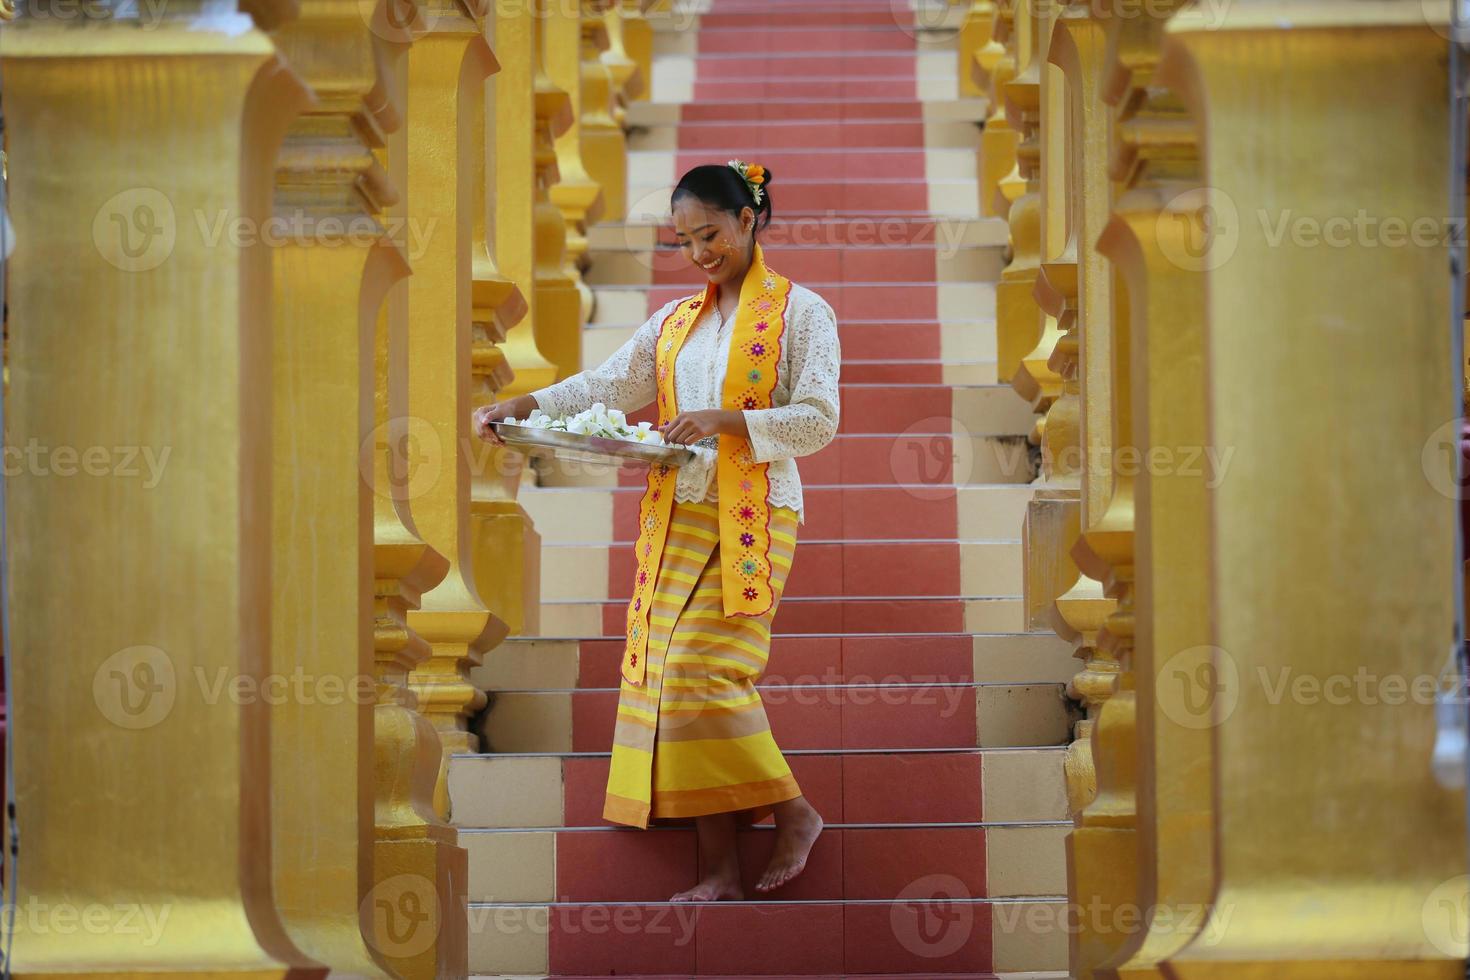 jovem asiática em traje tradicional birmanês, segurando a tigela de arroz na mão no pagode dourado no templo de mianmar. mulheres de mianmar segurando flores com vestido tradicional birmanês visitando um templo budista foto